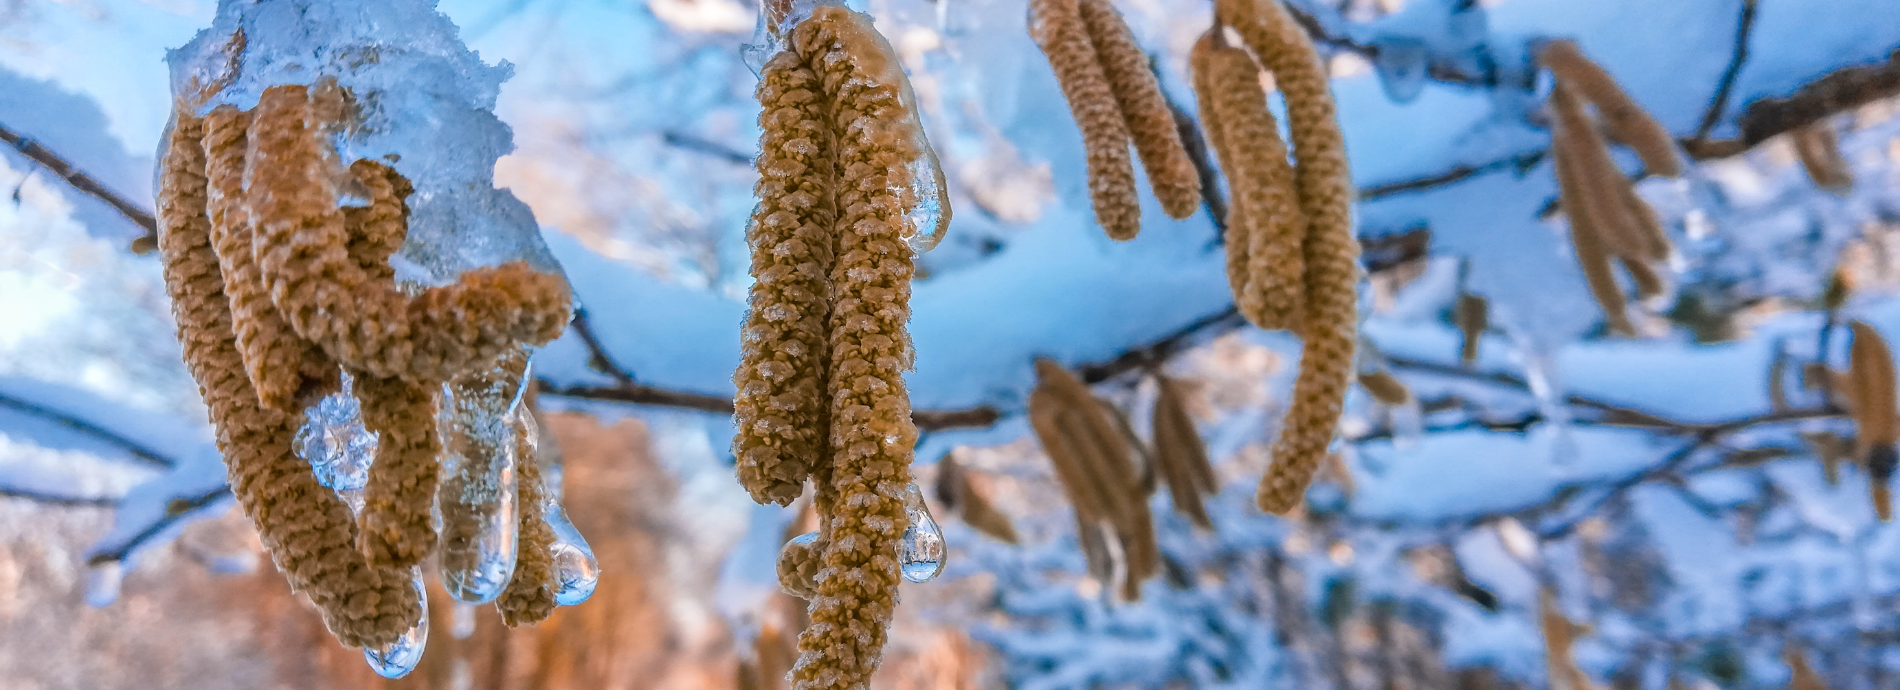 frozen birch catkins